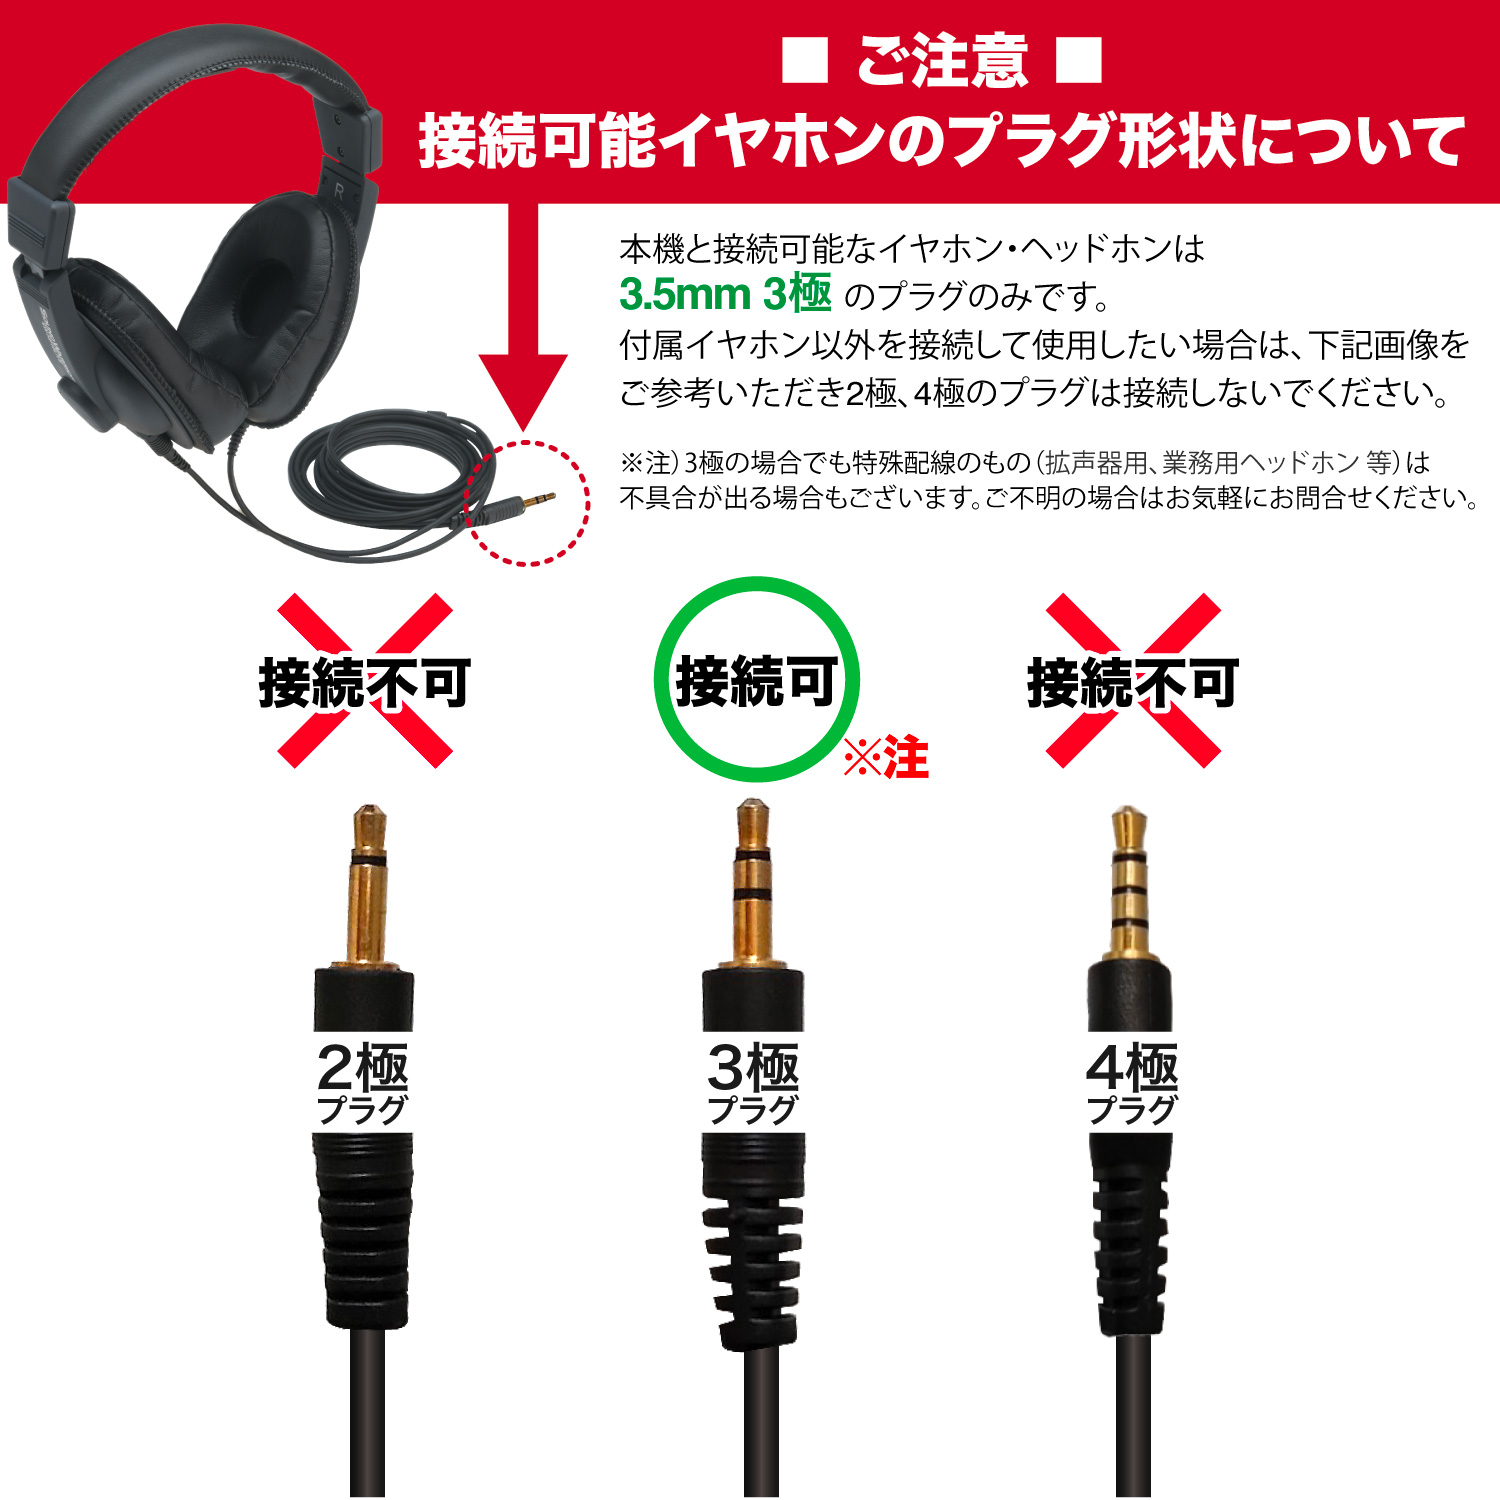 SW-NS1】手持ちのイヤホンやヘッドホンは使用できますか？ - soundwarrior